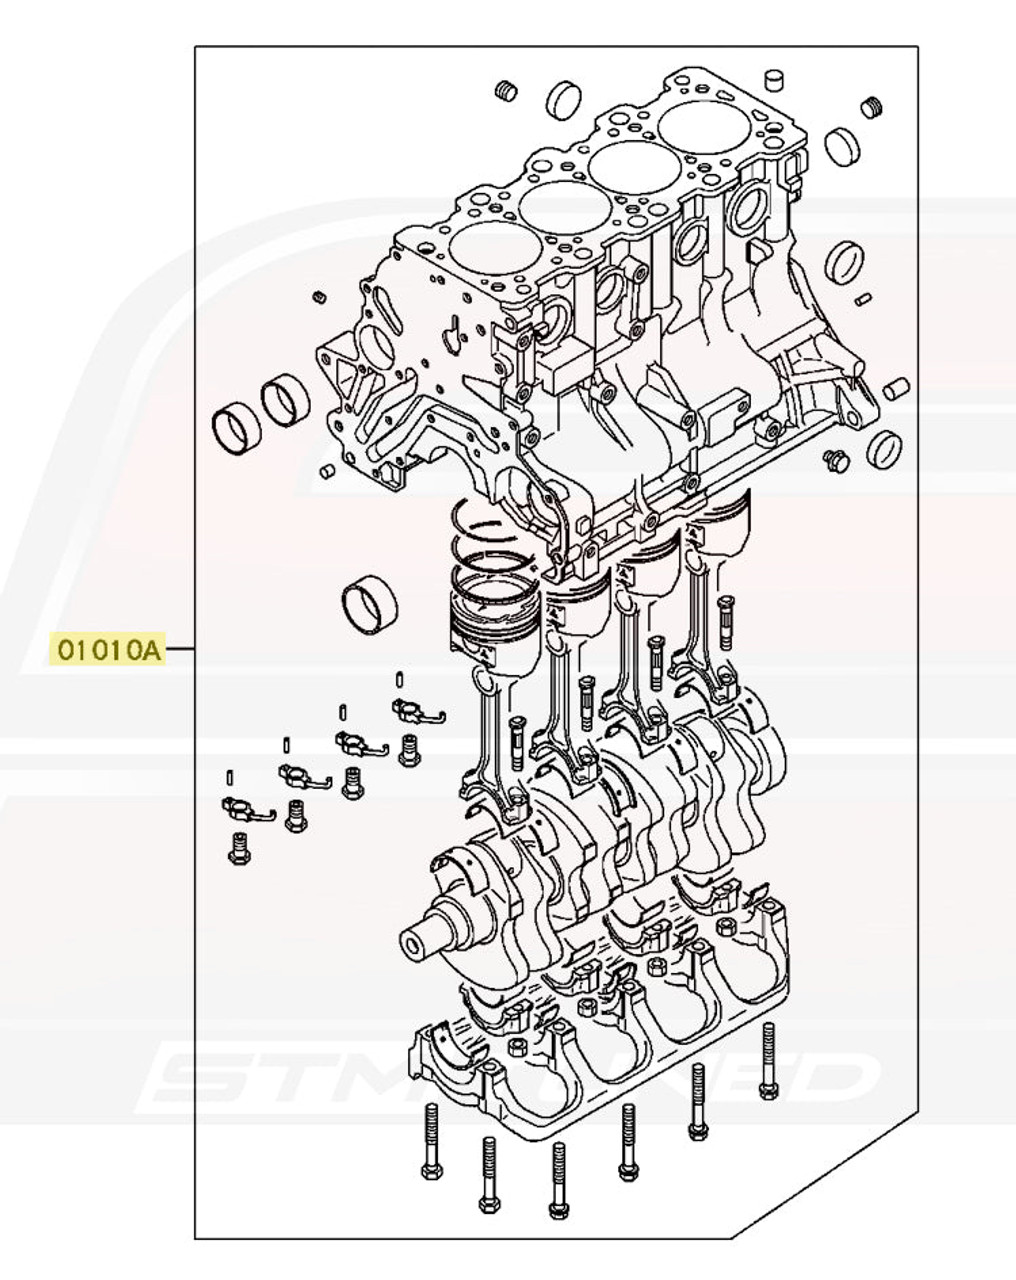 Mitsubishi OEM 4G63 Short Block for Evo 4-9